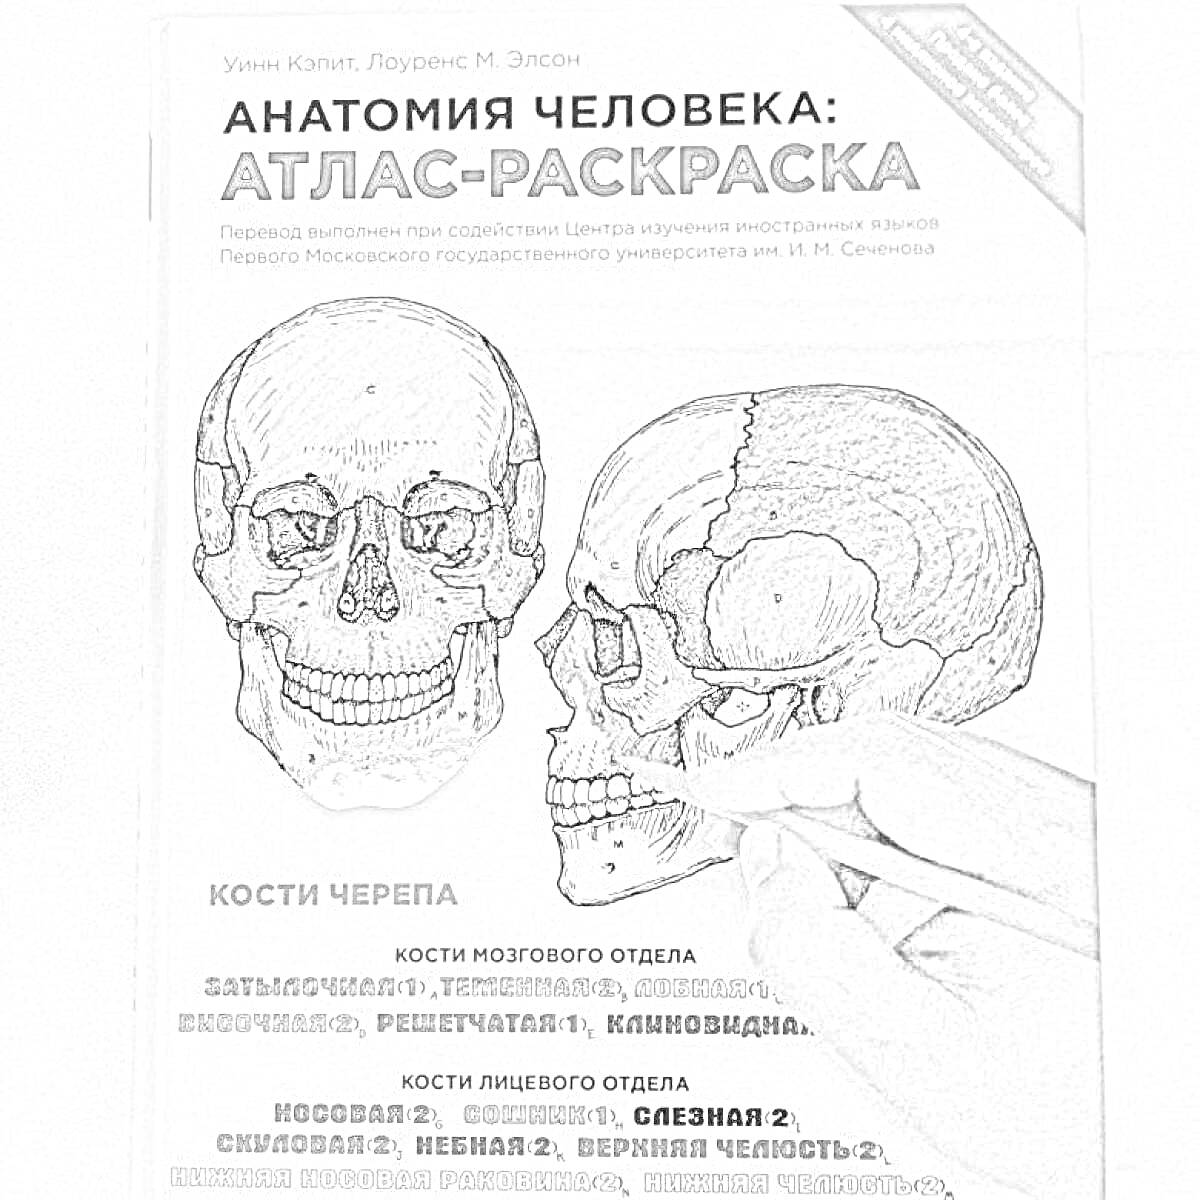 Анатомия человека: Атлас-раскраска. Изображены черепа с обозначением костей мозгового и лицевого отделов черепа, с цветной заливкой различных секций.